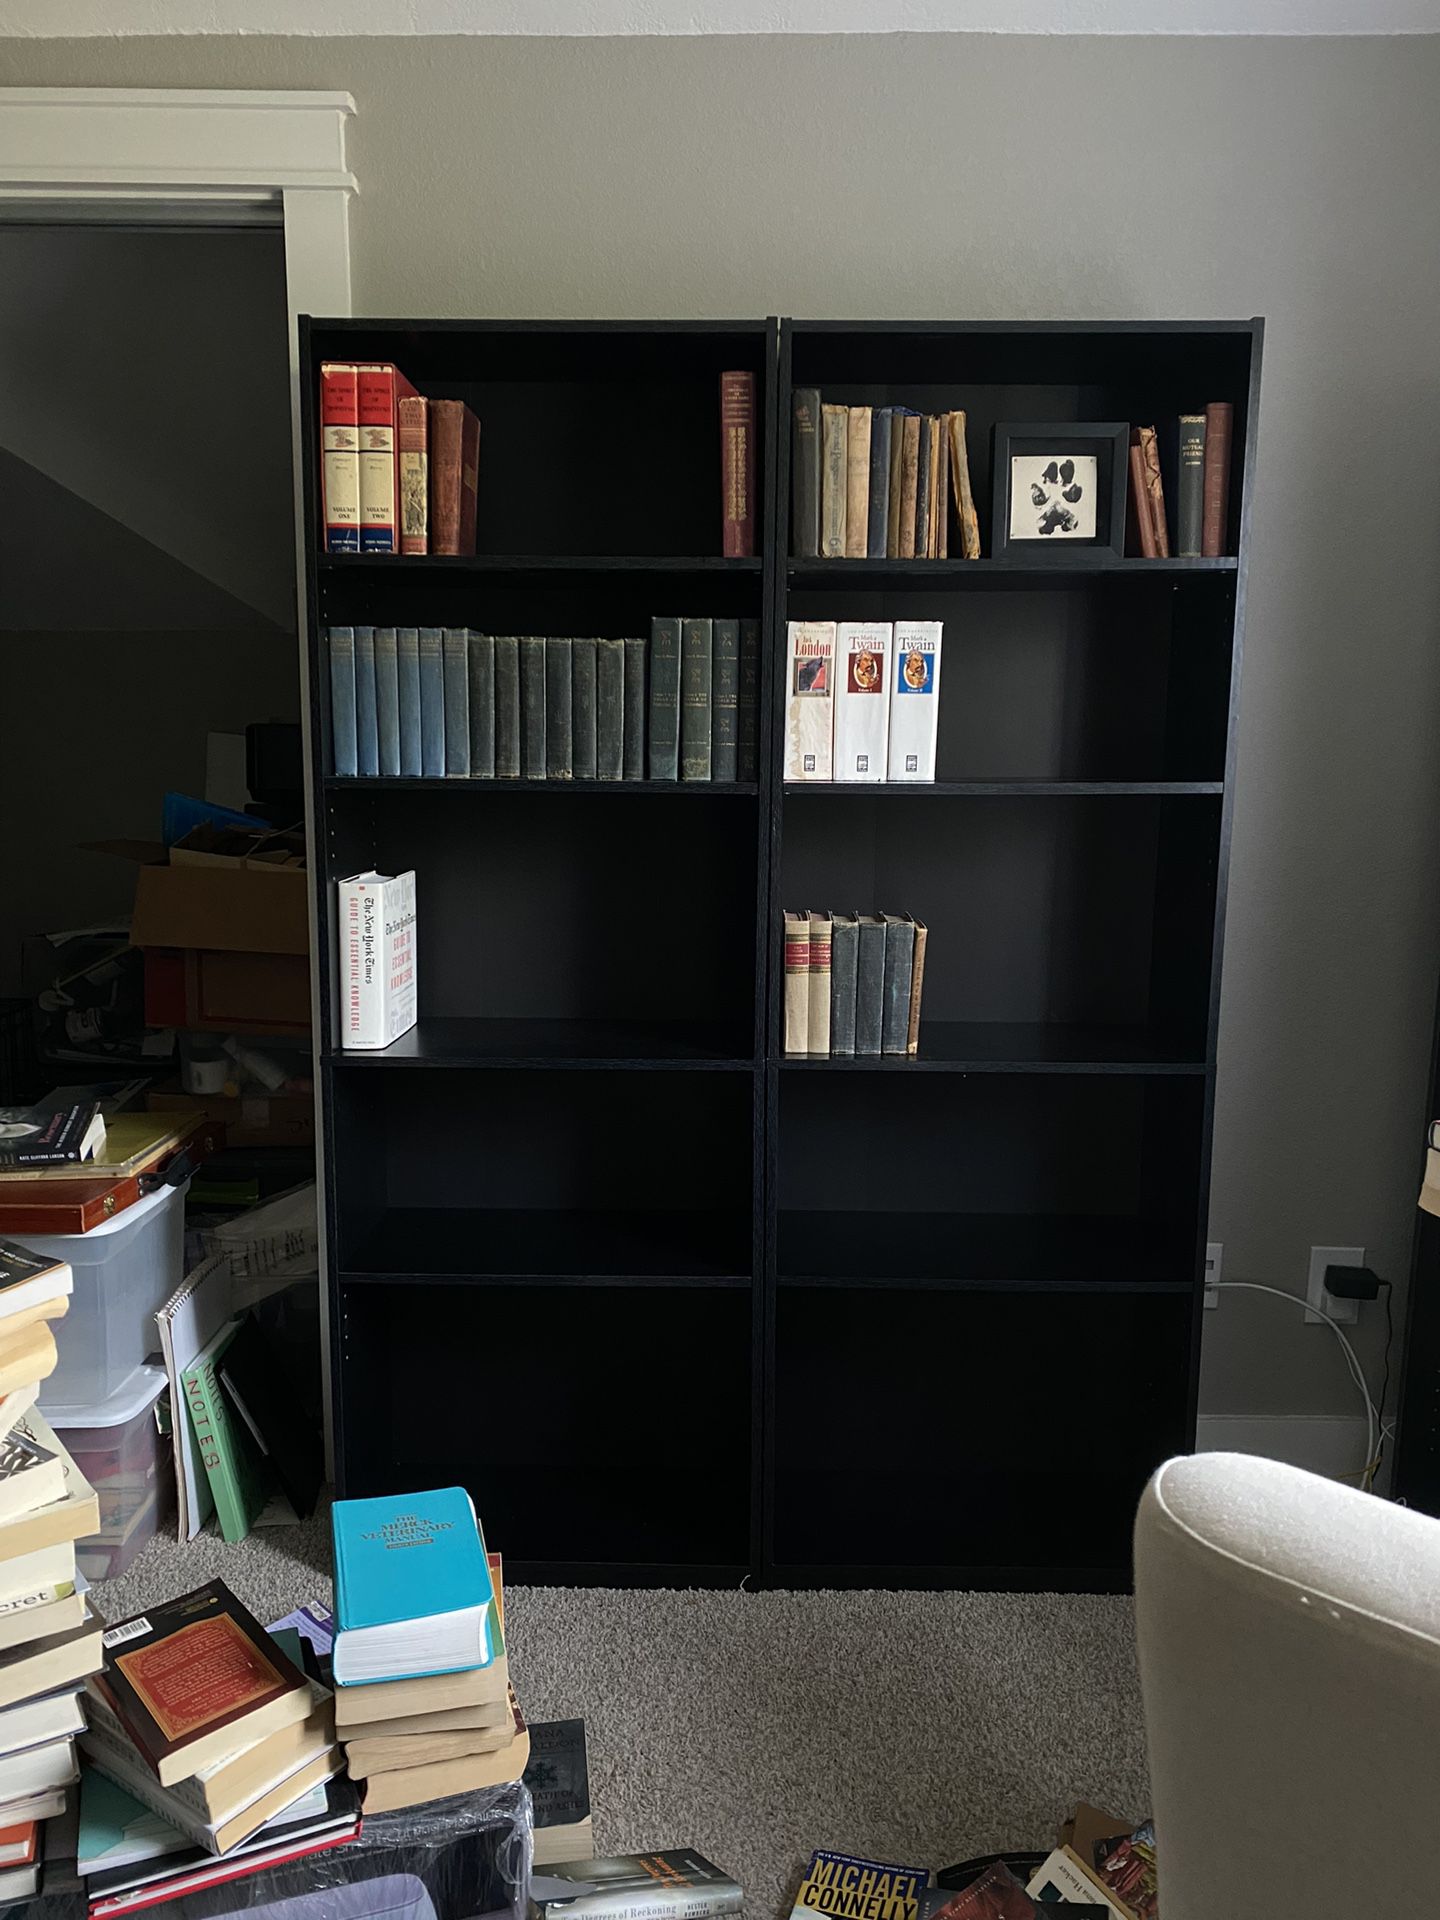 2 Black Bookshelves